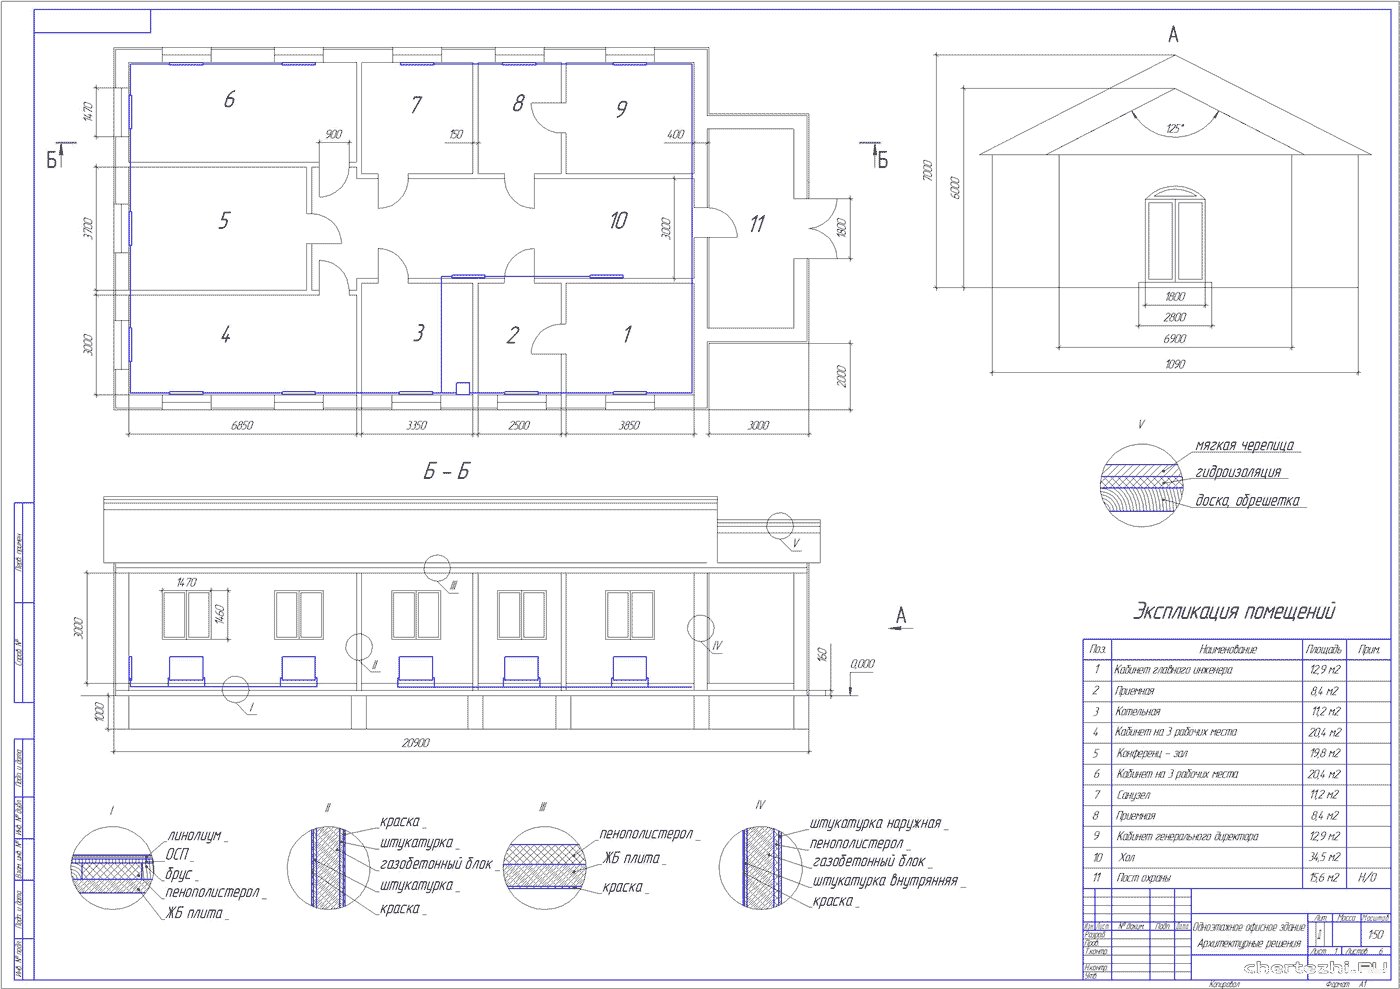 Дипломный проект - Проектирование, монтаж и подготовка к вводу в эксплуатацию автоматизированной системы отопления офисного здания